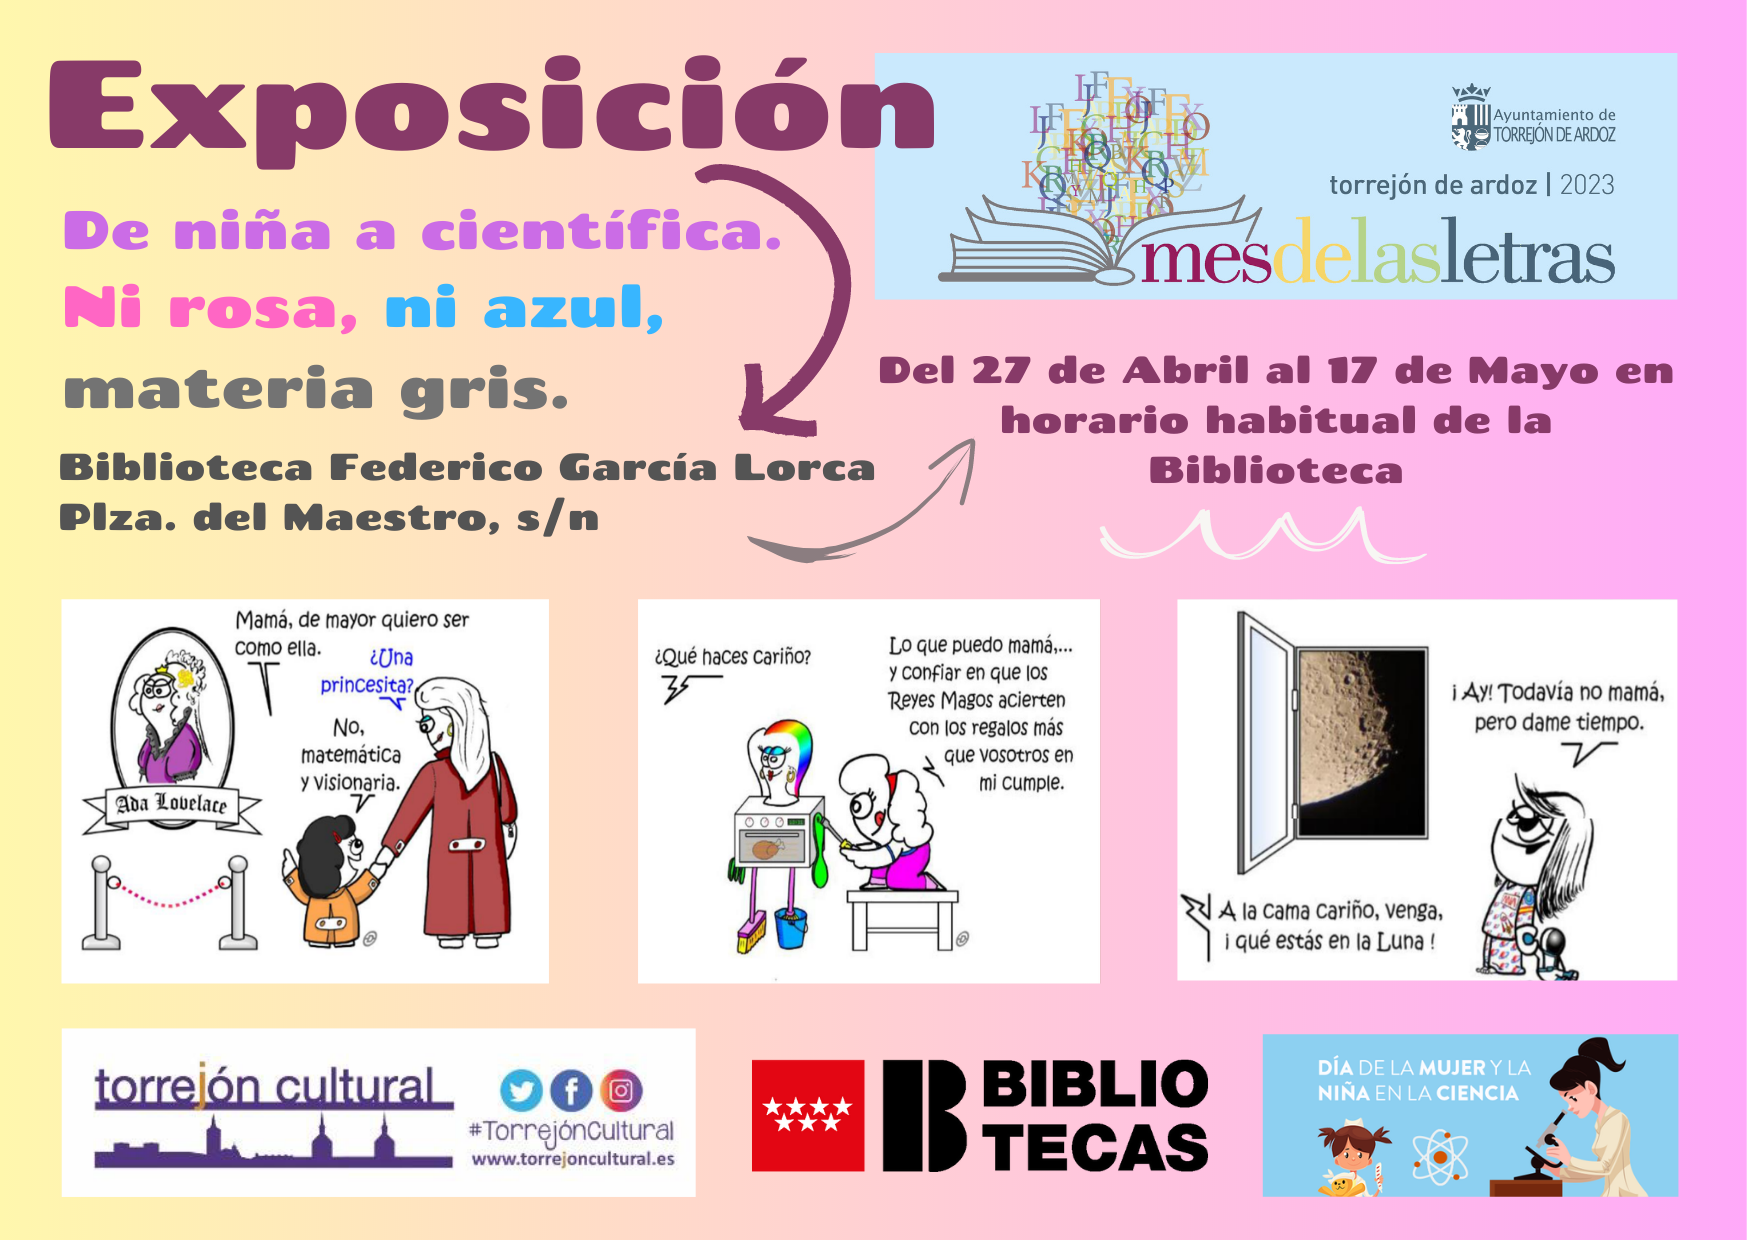 Exposición "De niña a científica"